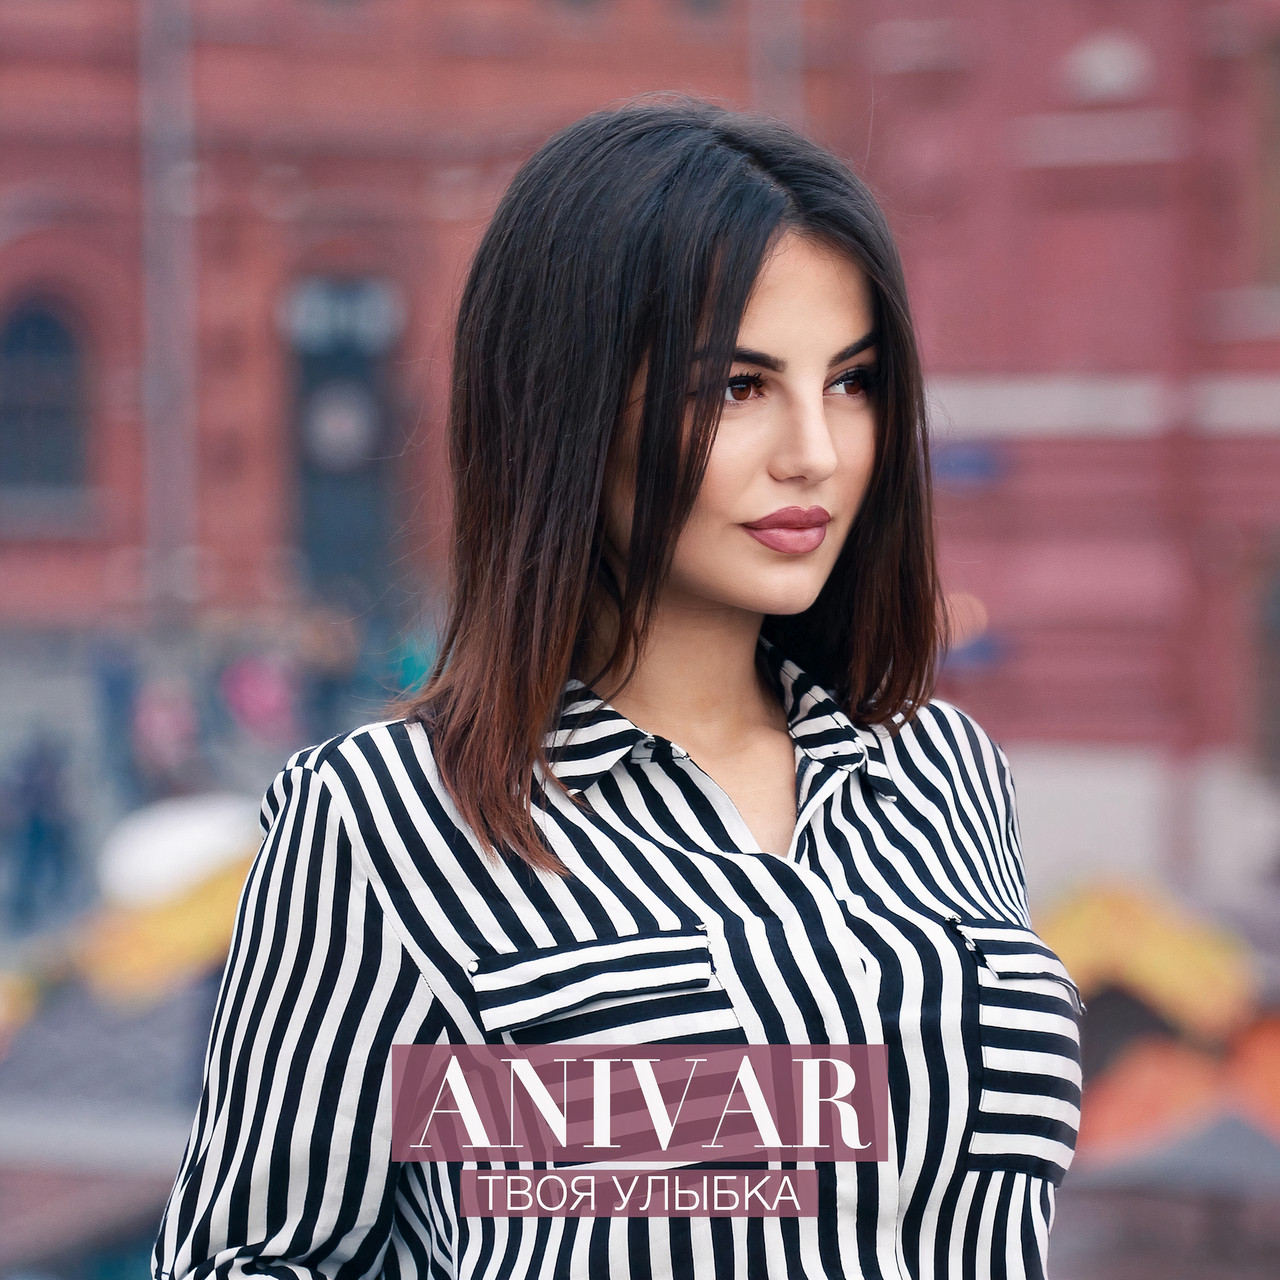 ANiVAR Women Singer Russian Russian Women Outdoors Shoulder Length Hair Dark Hair Makeup 1280x1280